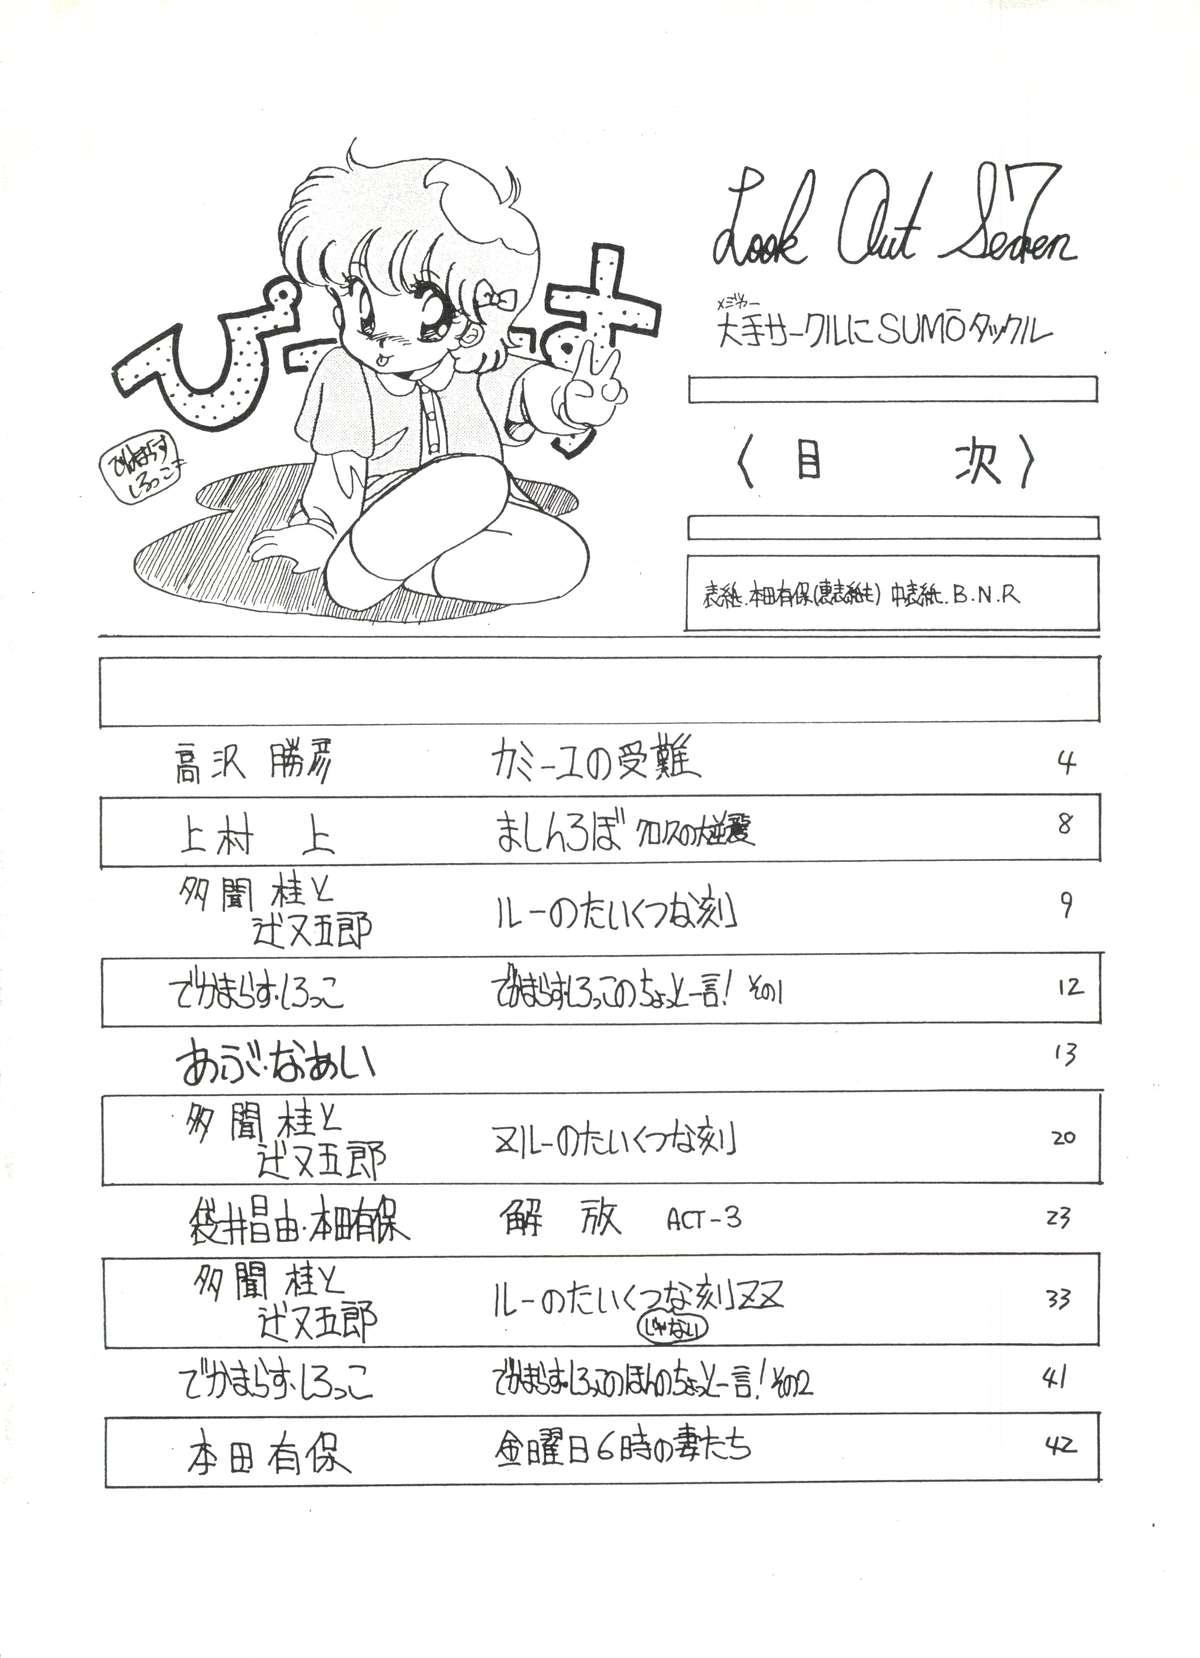 Buttfucking LOOK OUT 7 - Urusei yatsura Maison ikkoku Gundam zz Pastel yumi Pau - Page 2